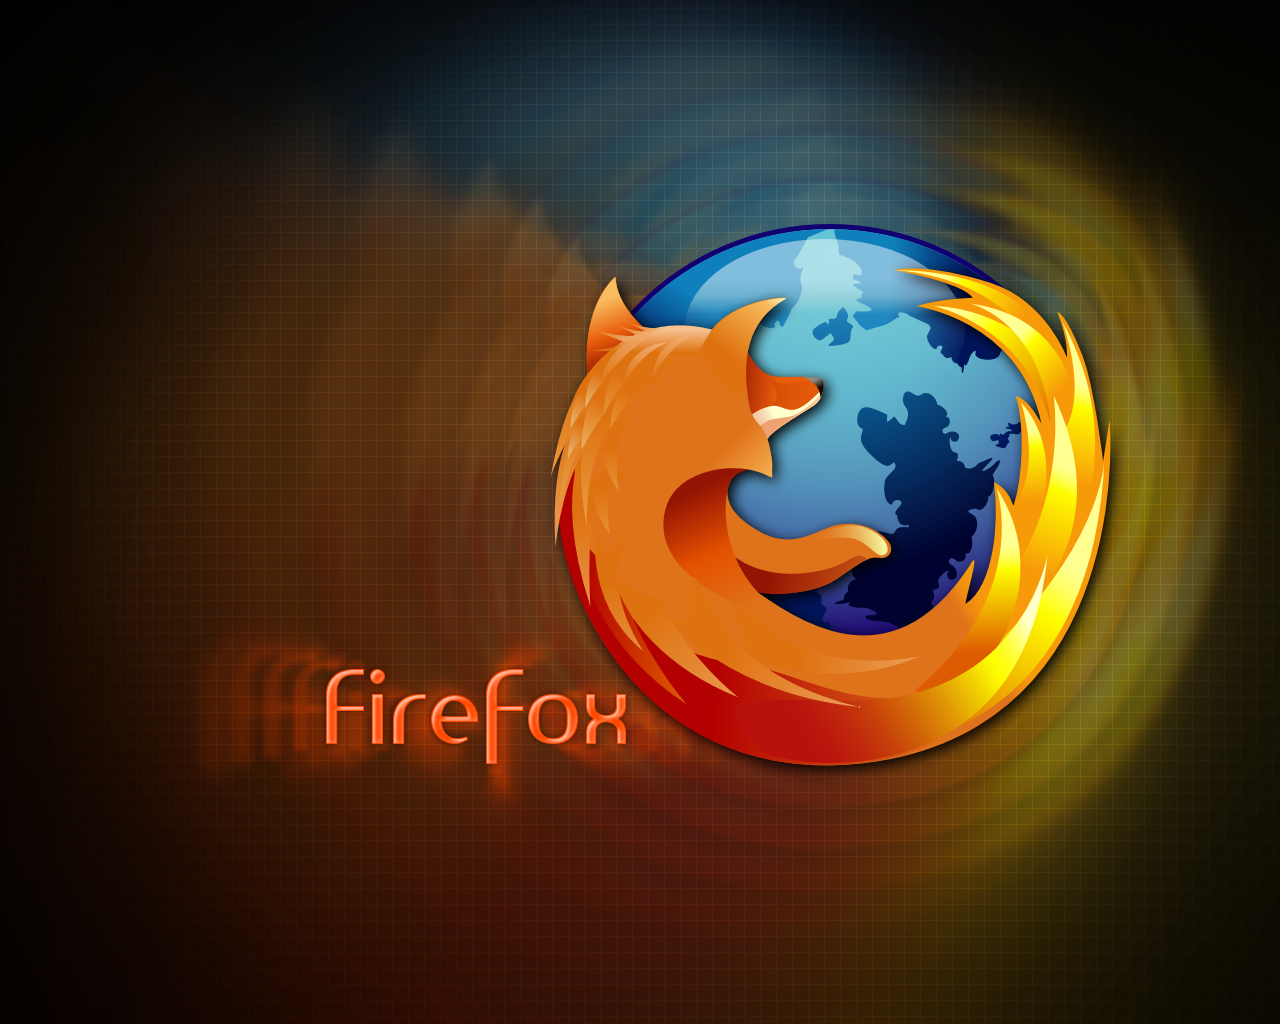 Δωρεάν βιντεοκλήσεις μέσα από τον Firefox - Φωτογραφία 1